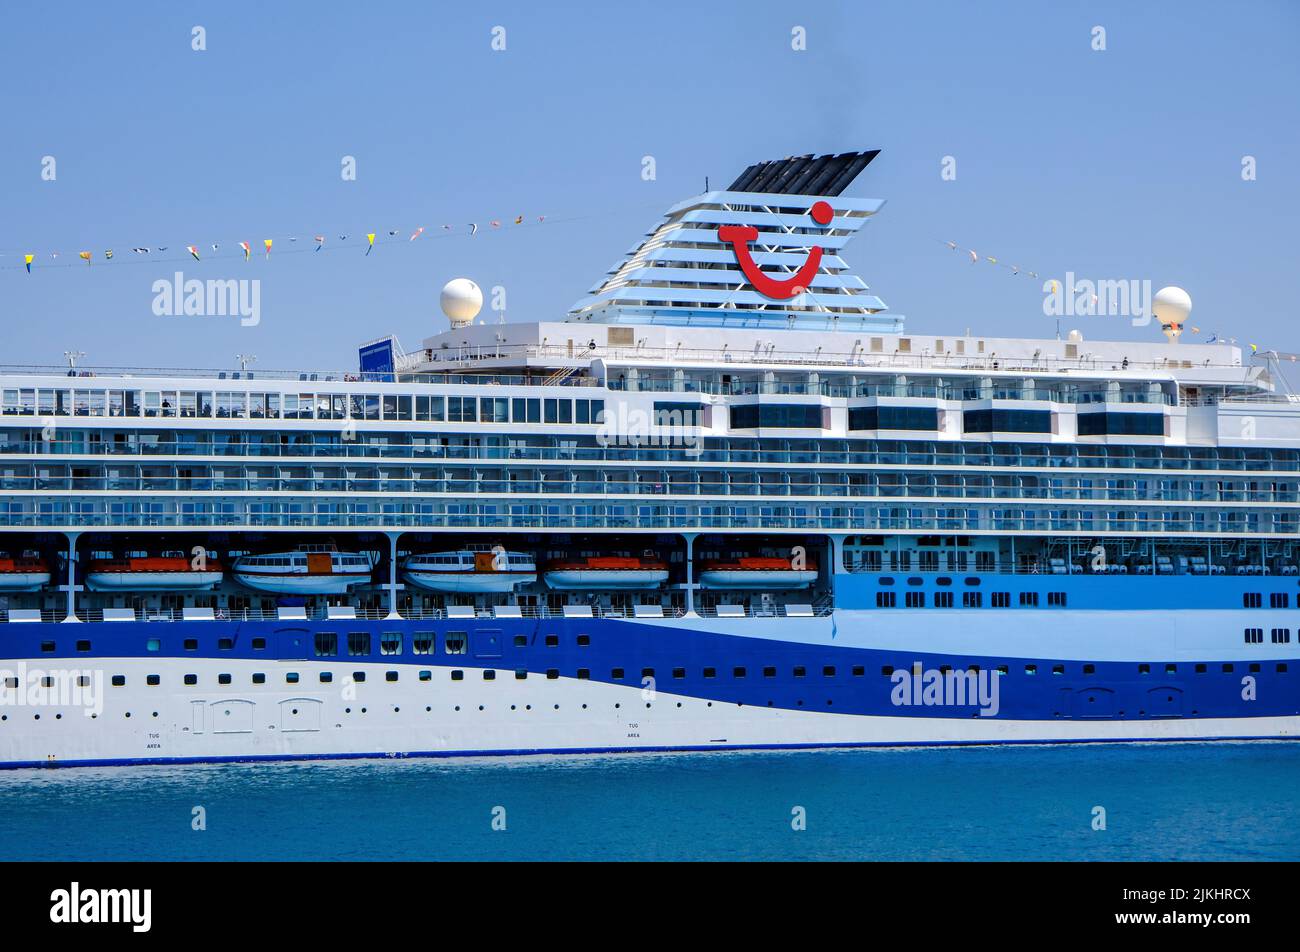 Corfú, Corfú, Grecia - El crucero TUI Marella Explorer está amarrado en el puerto de Corfú. El barco de 262 metros de largo tiene una masa de 9, 900 toneladas. Foto de stock